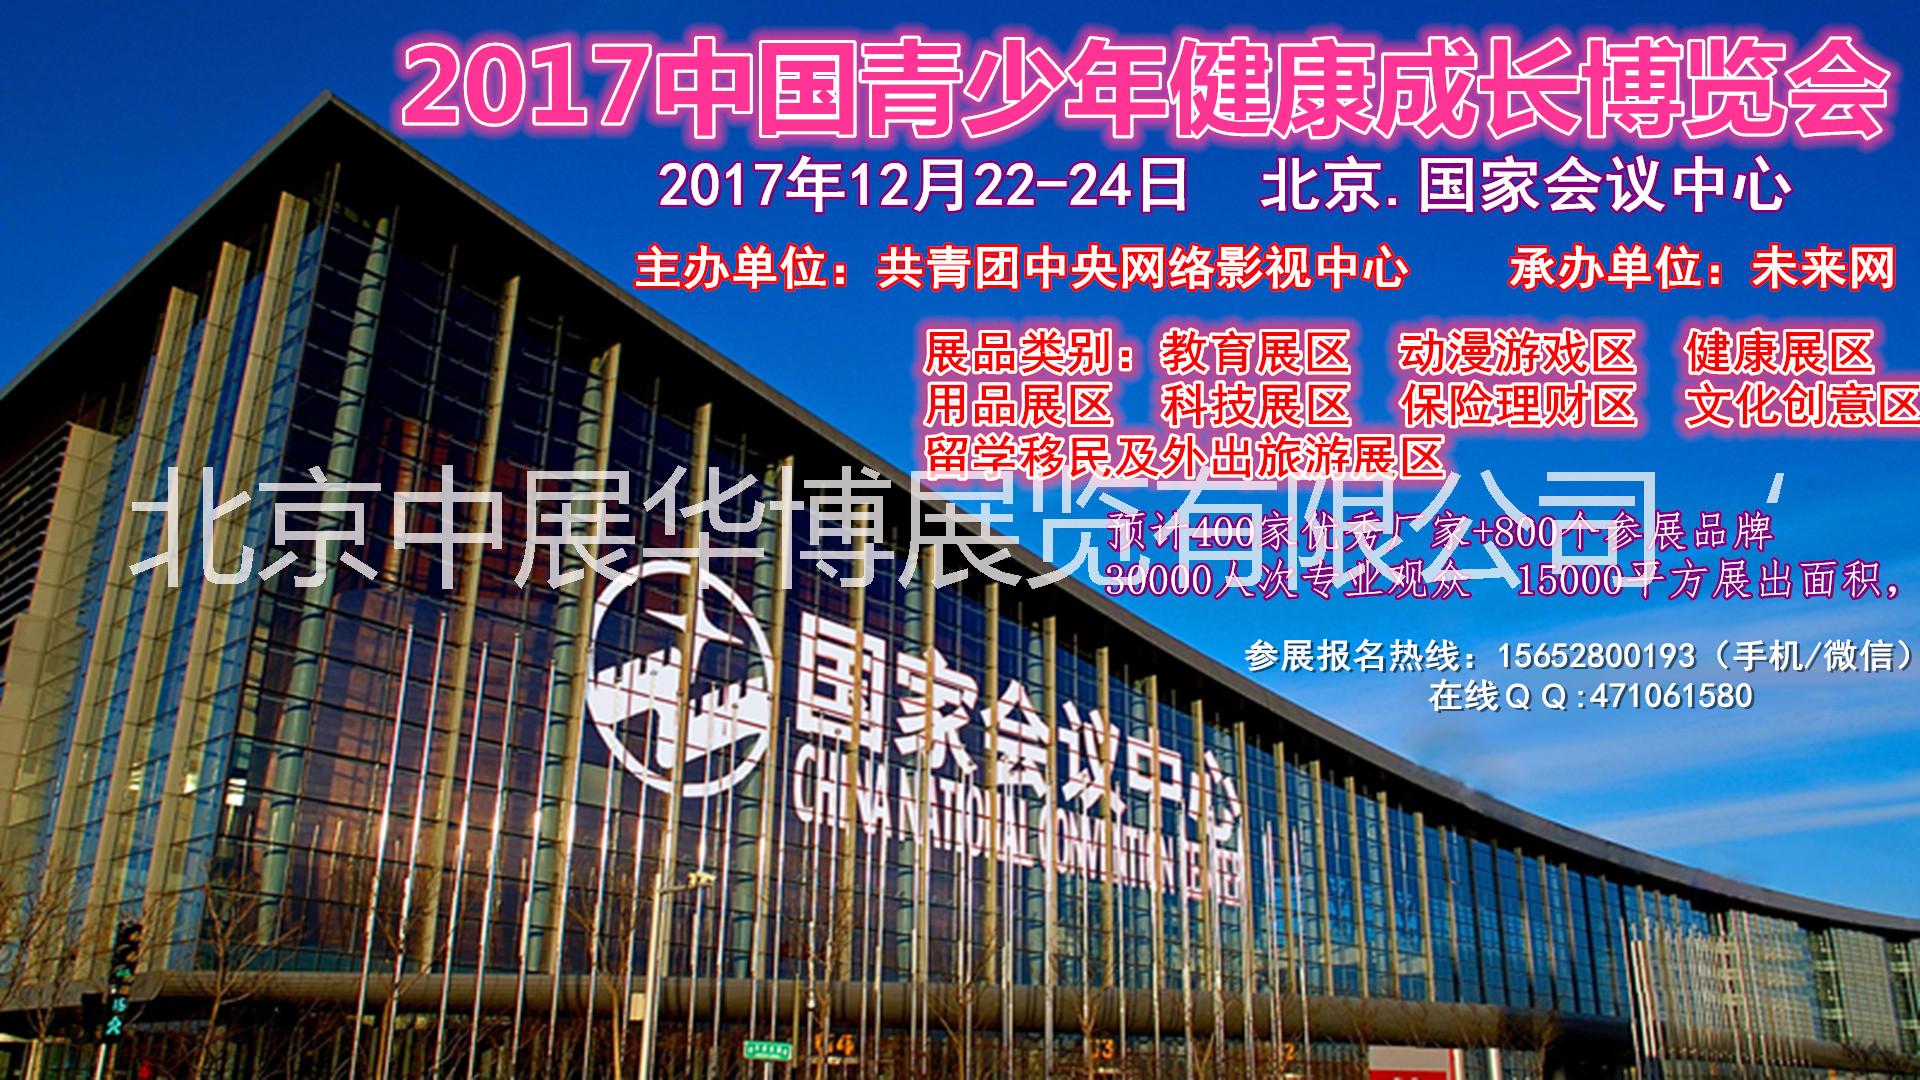 2017中国青少年健康成长博览会